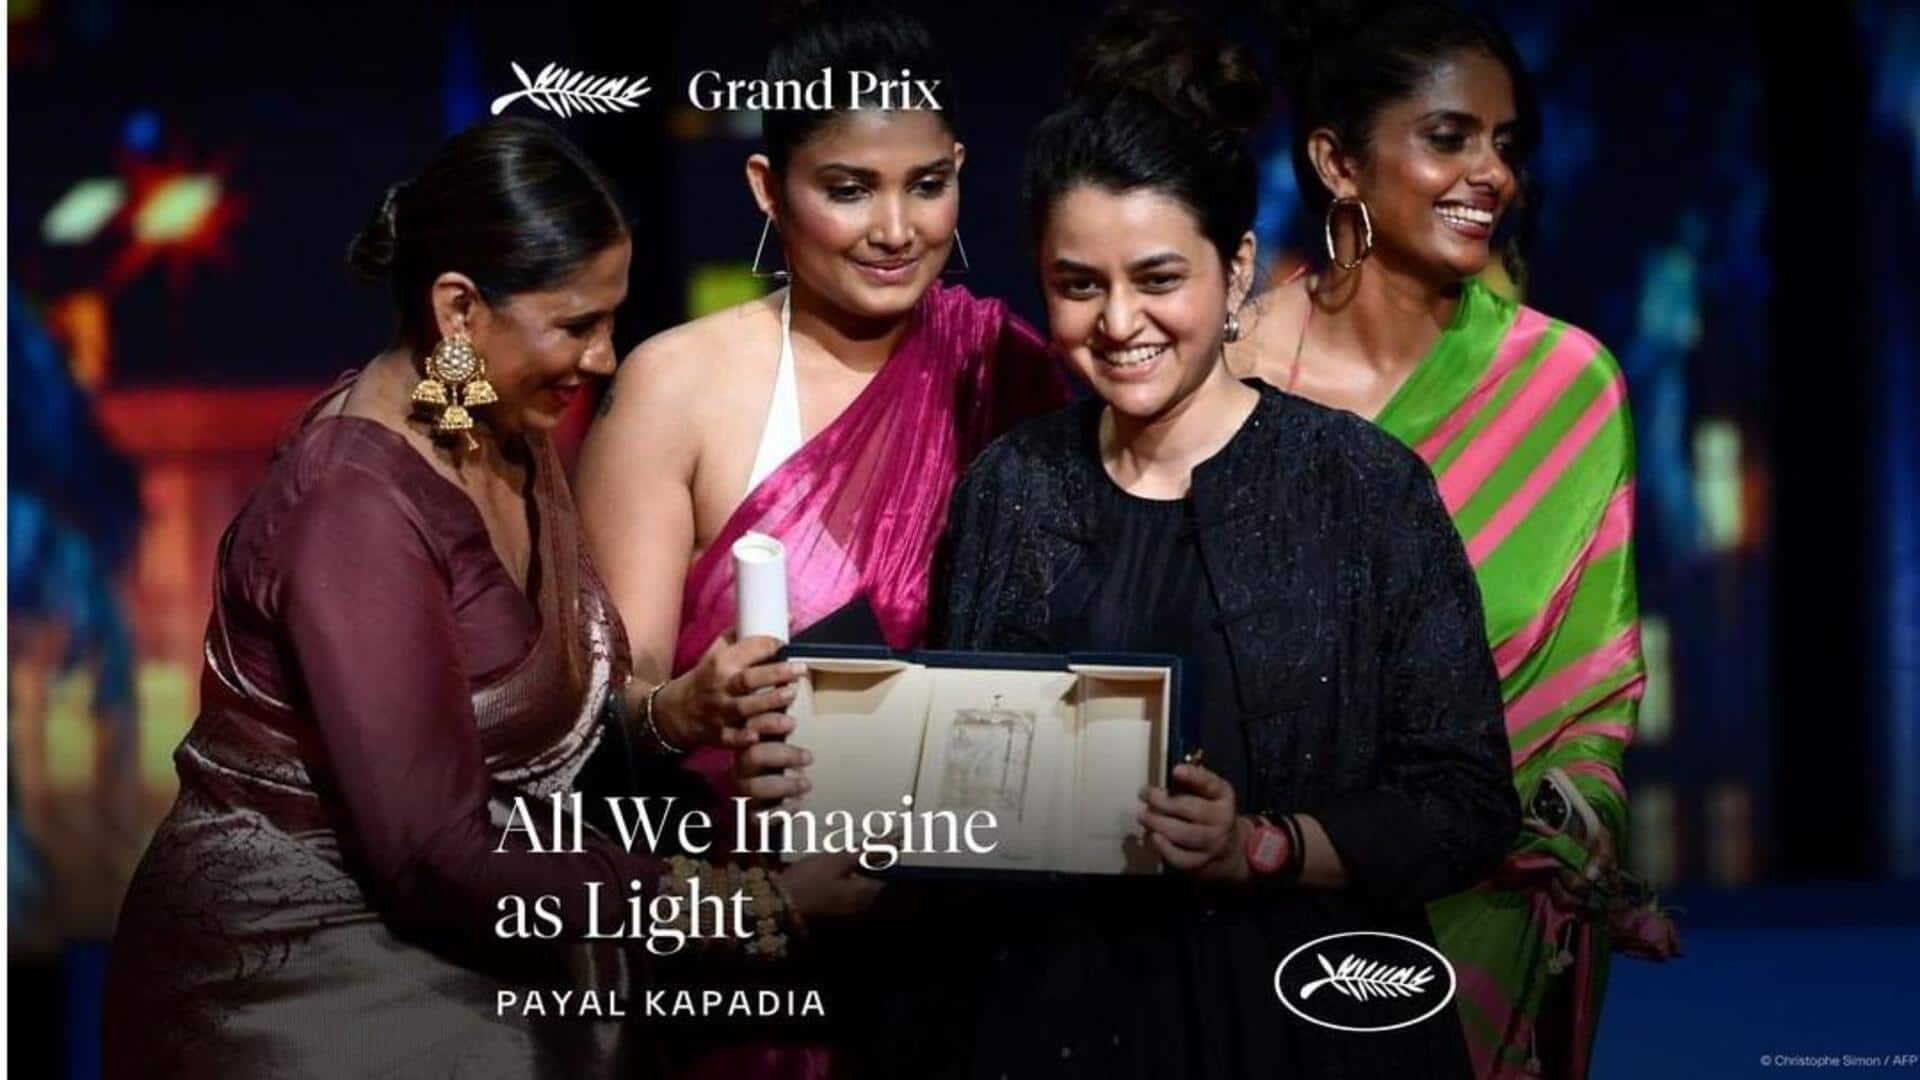 कान्स में ग्रैंड प्रिक्स पुरस्कार जीतने वाली पहली भारतीय फिल्म बनी 'ऑल वी इमेजिन ऐज लाइट'